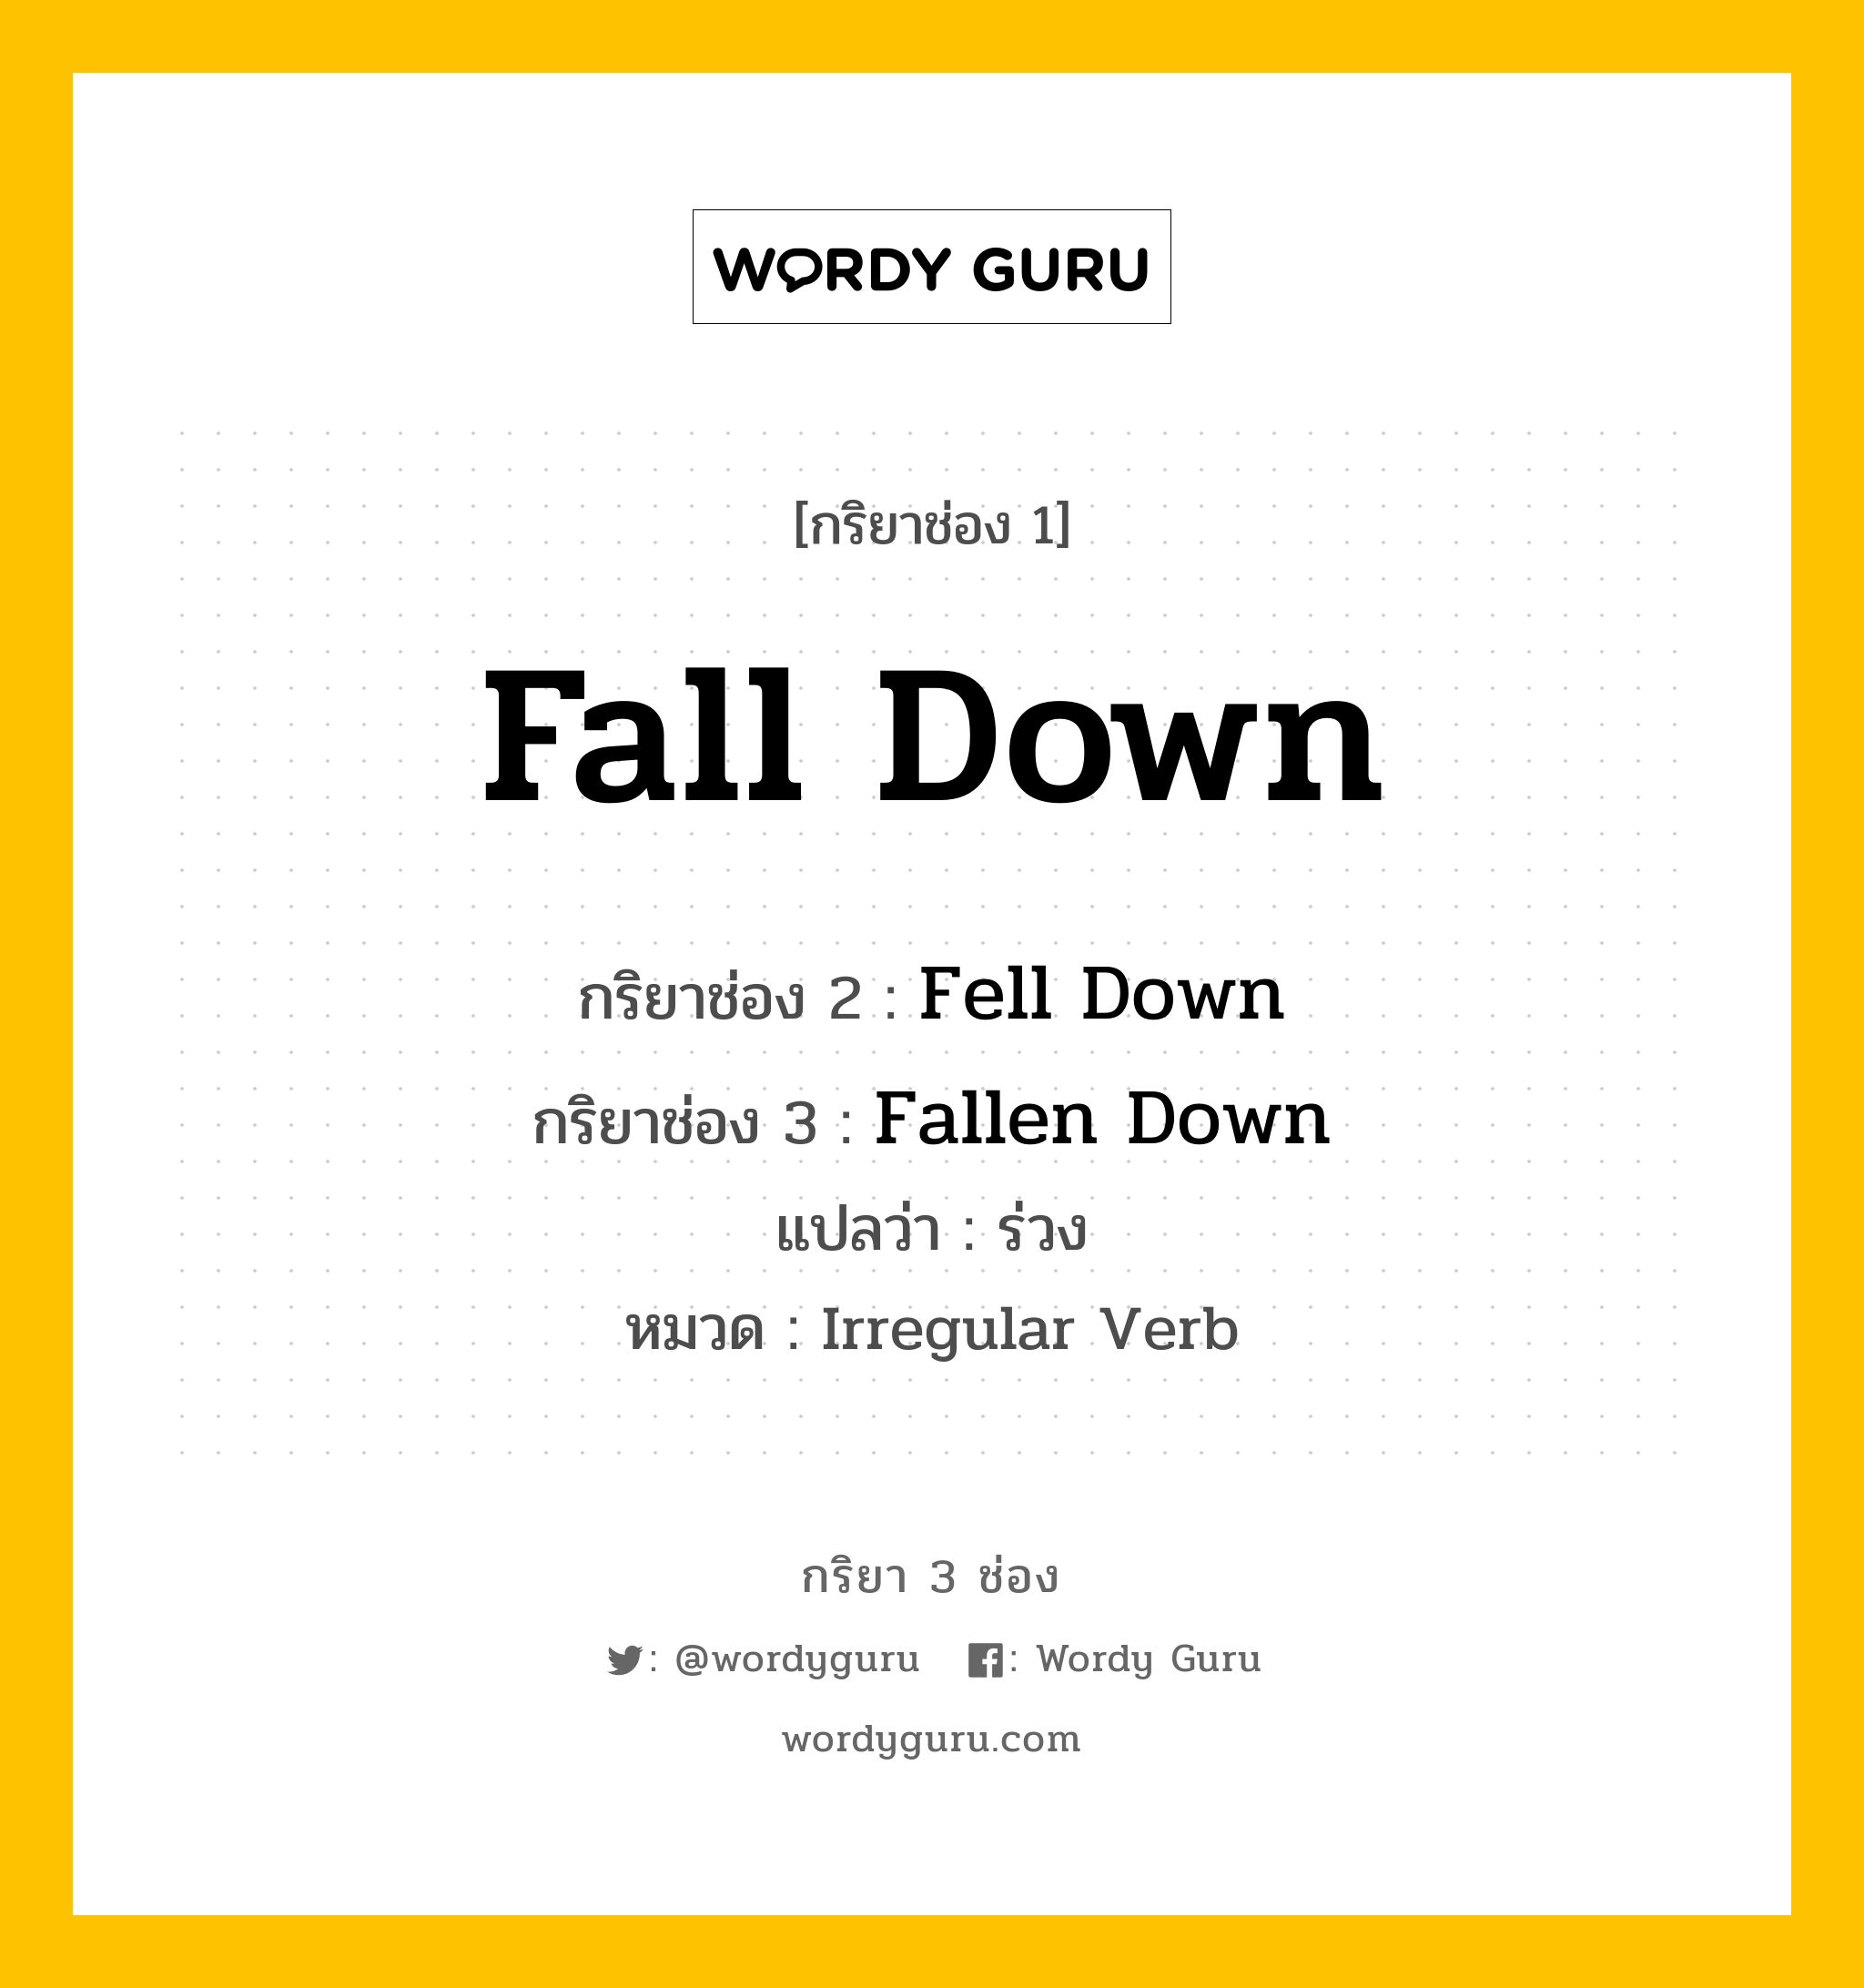 Fall Down มีกริยา 3 ช่องอะไรบ้าง? คำศัพท์ในกลุ่มประเภท Irregular Verb, กริยาช่อง 1 Fall Down กริยาช่อง 2 Fell Down กริยาช่อง 3 Fallen Down แปลว่า ร่วง หมวด Irregular Verb หมวด Irregular Verb